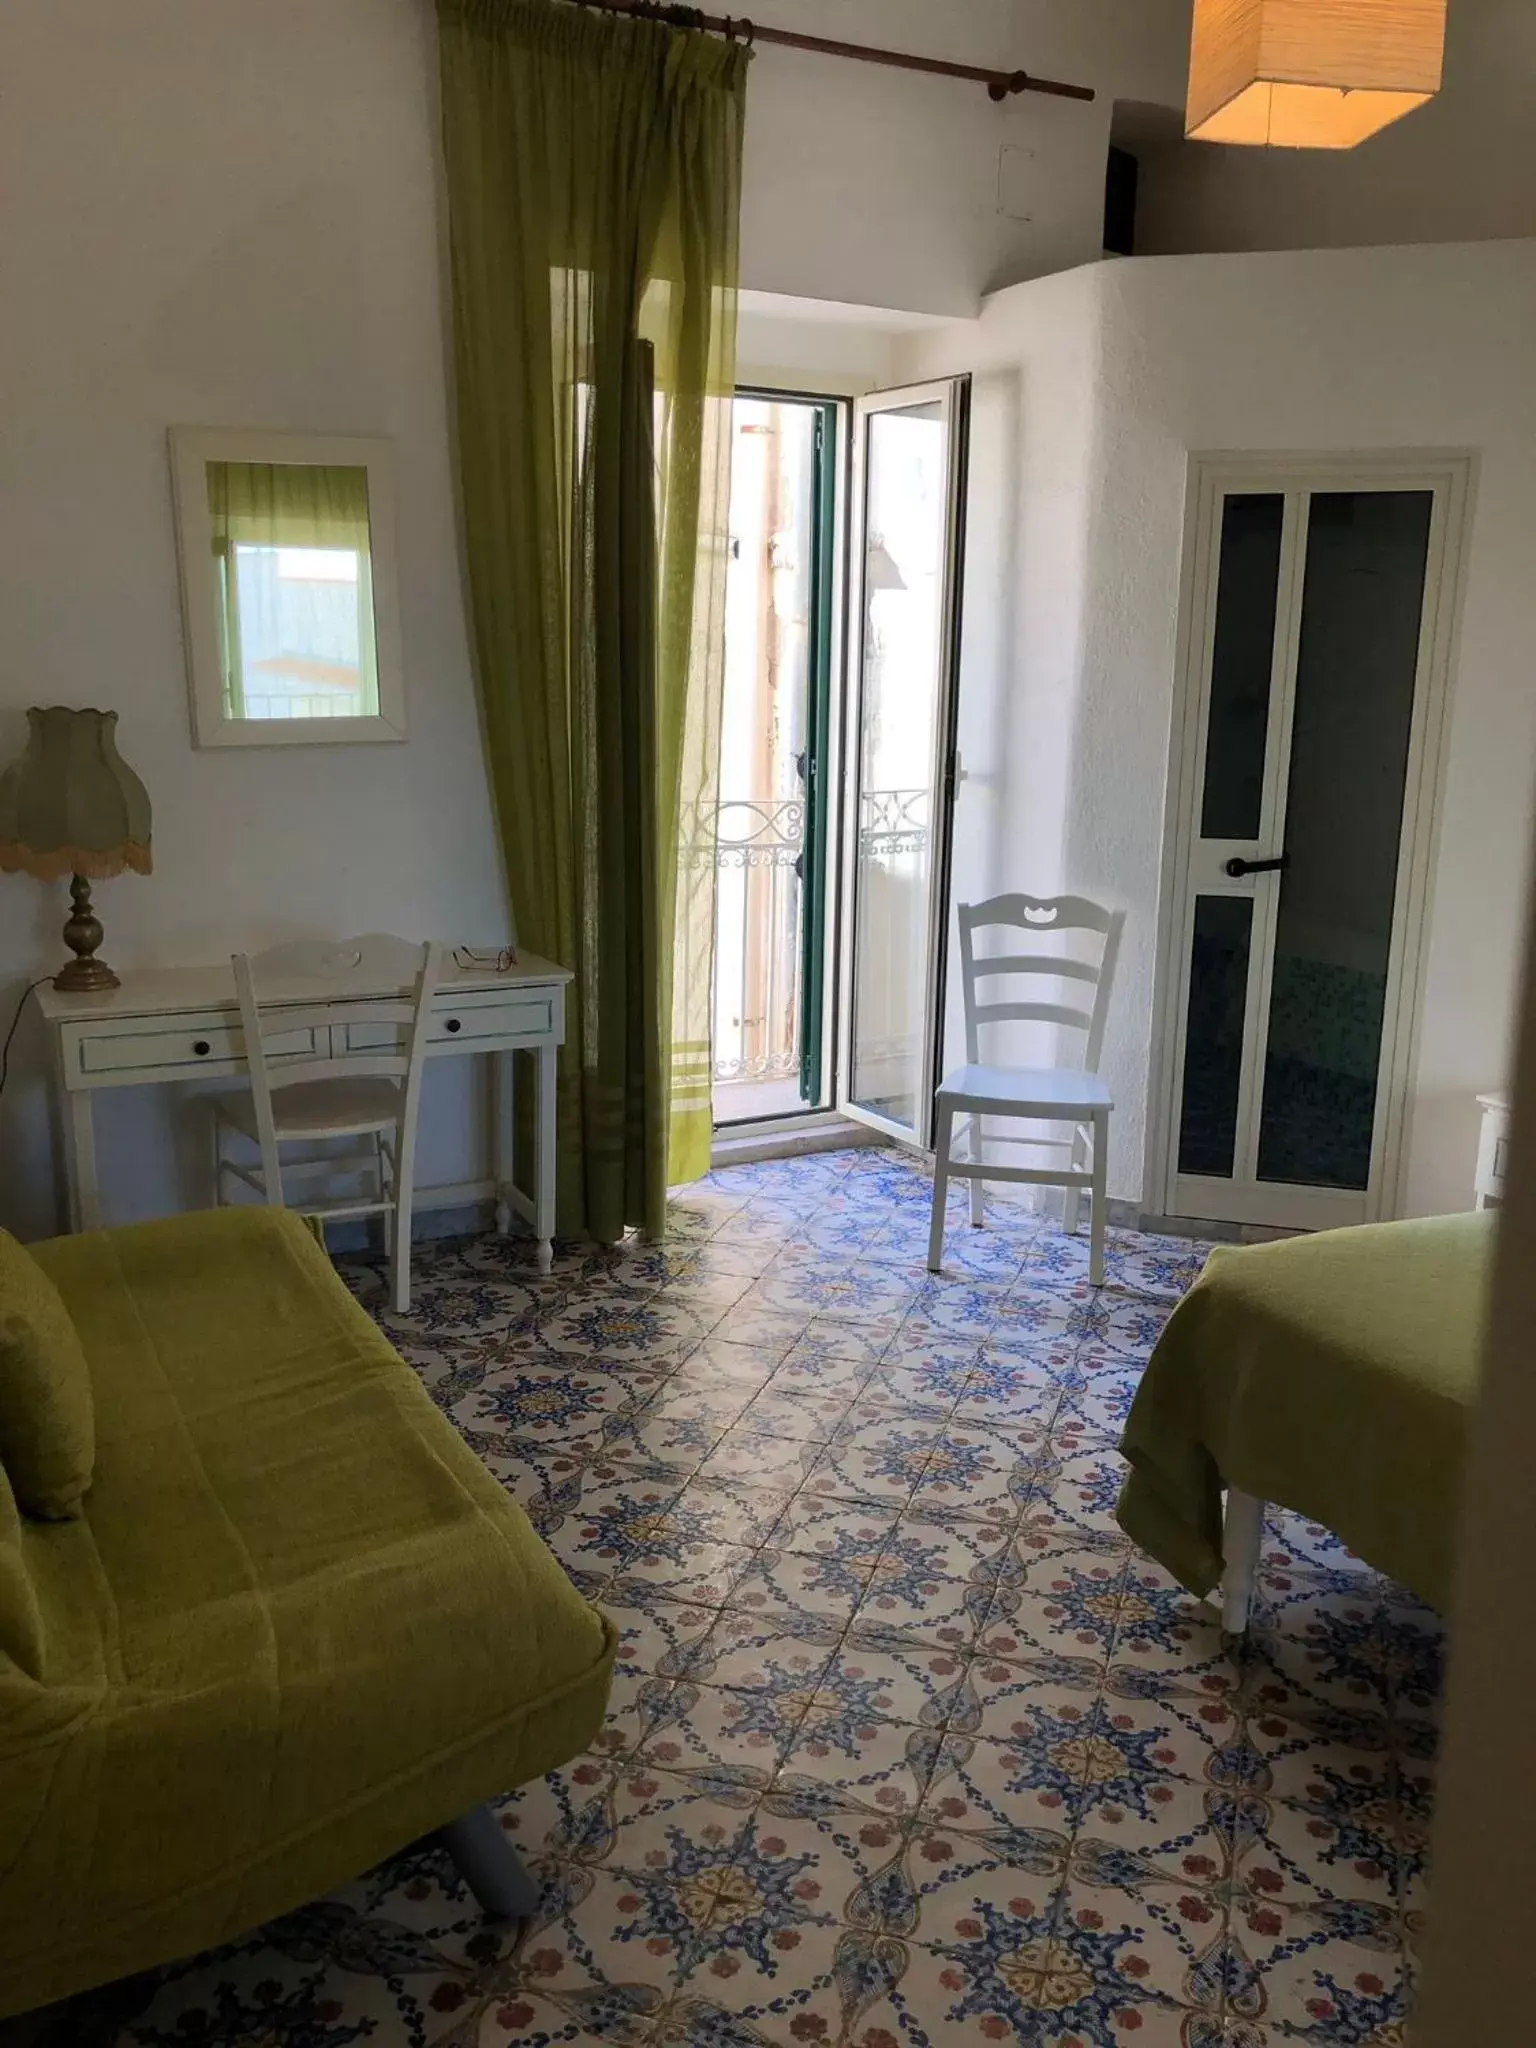 Seating Area in Rocca Sul Mare Hotel